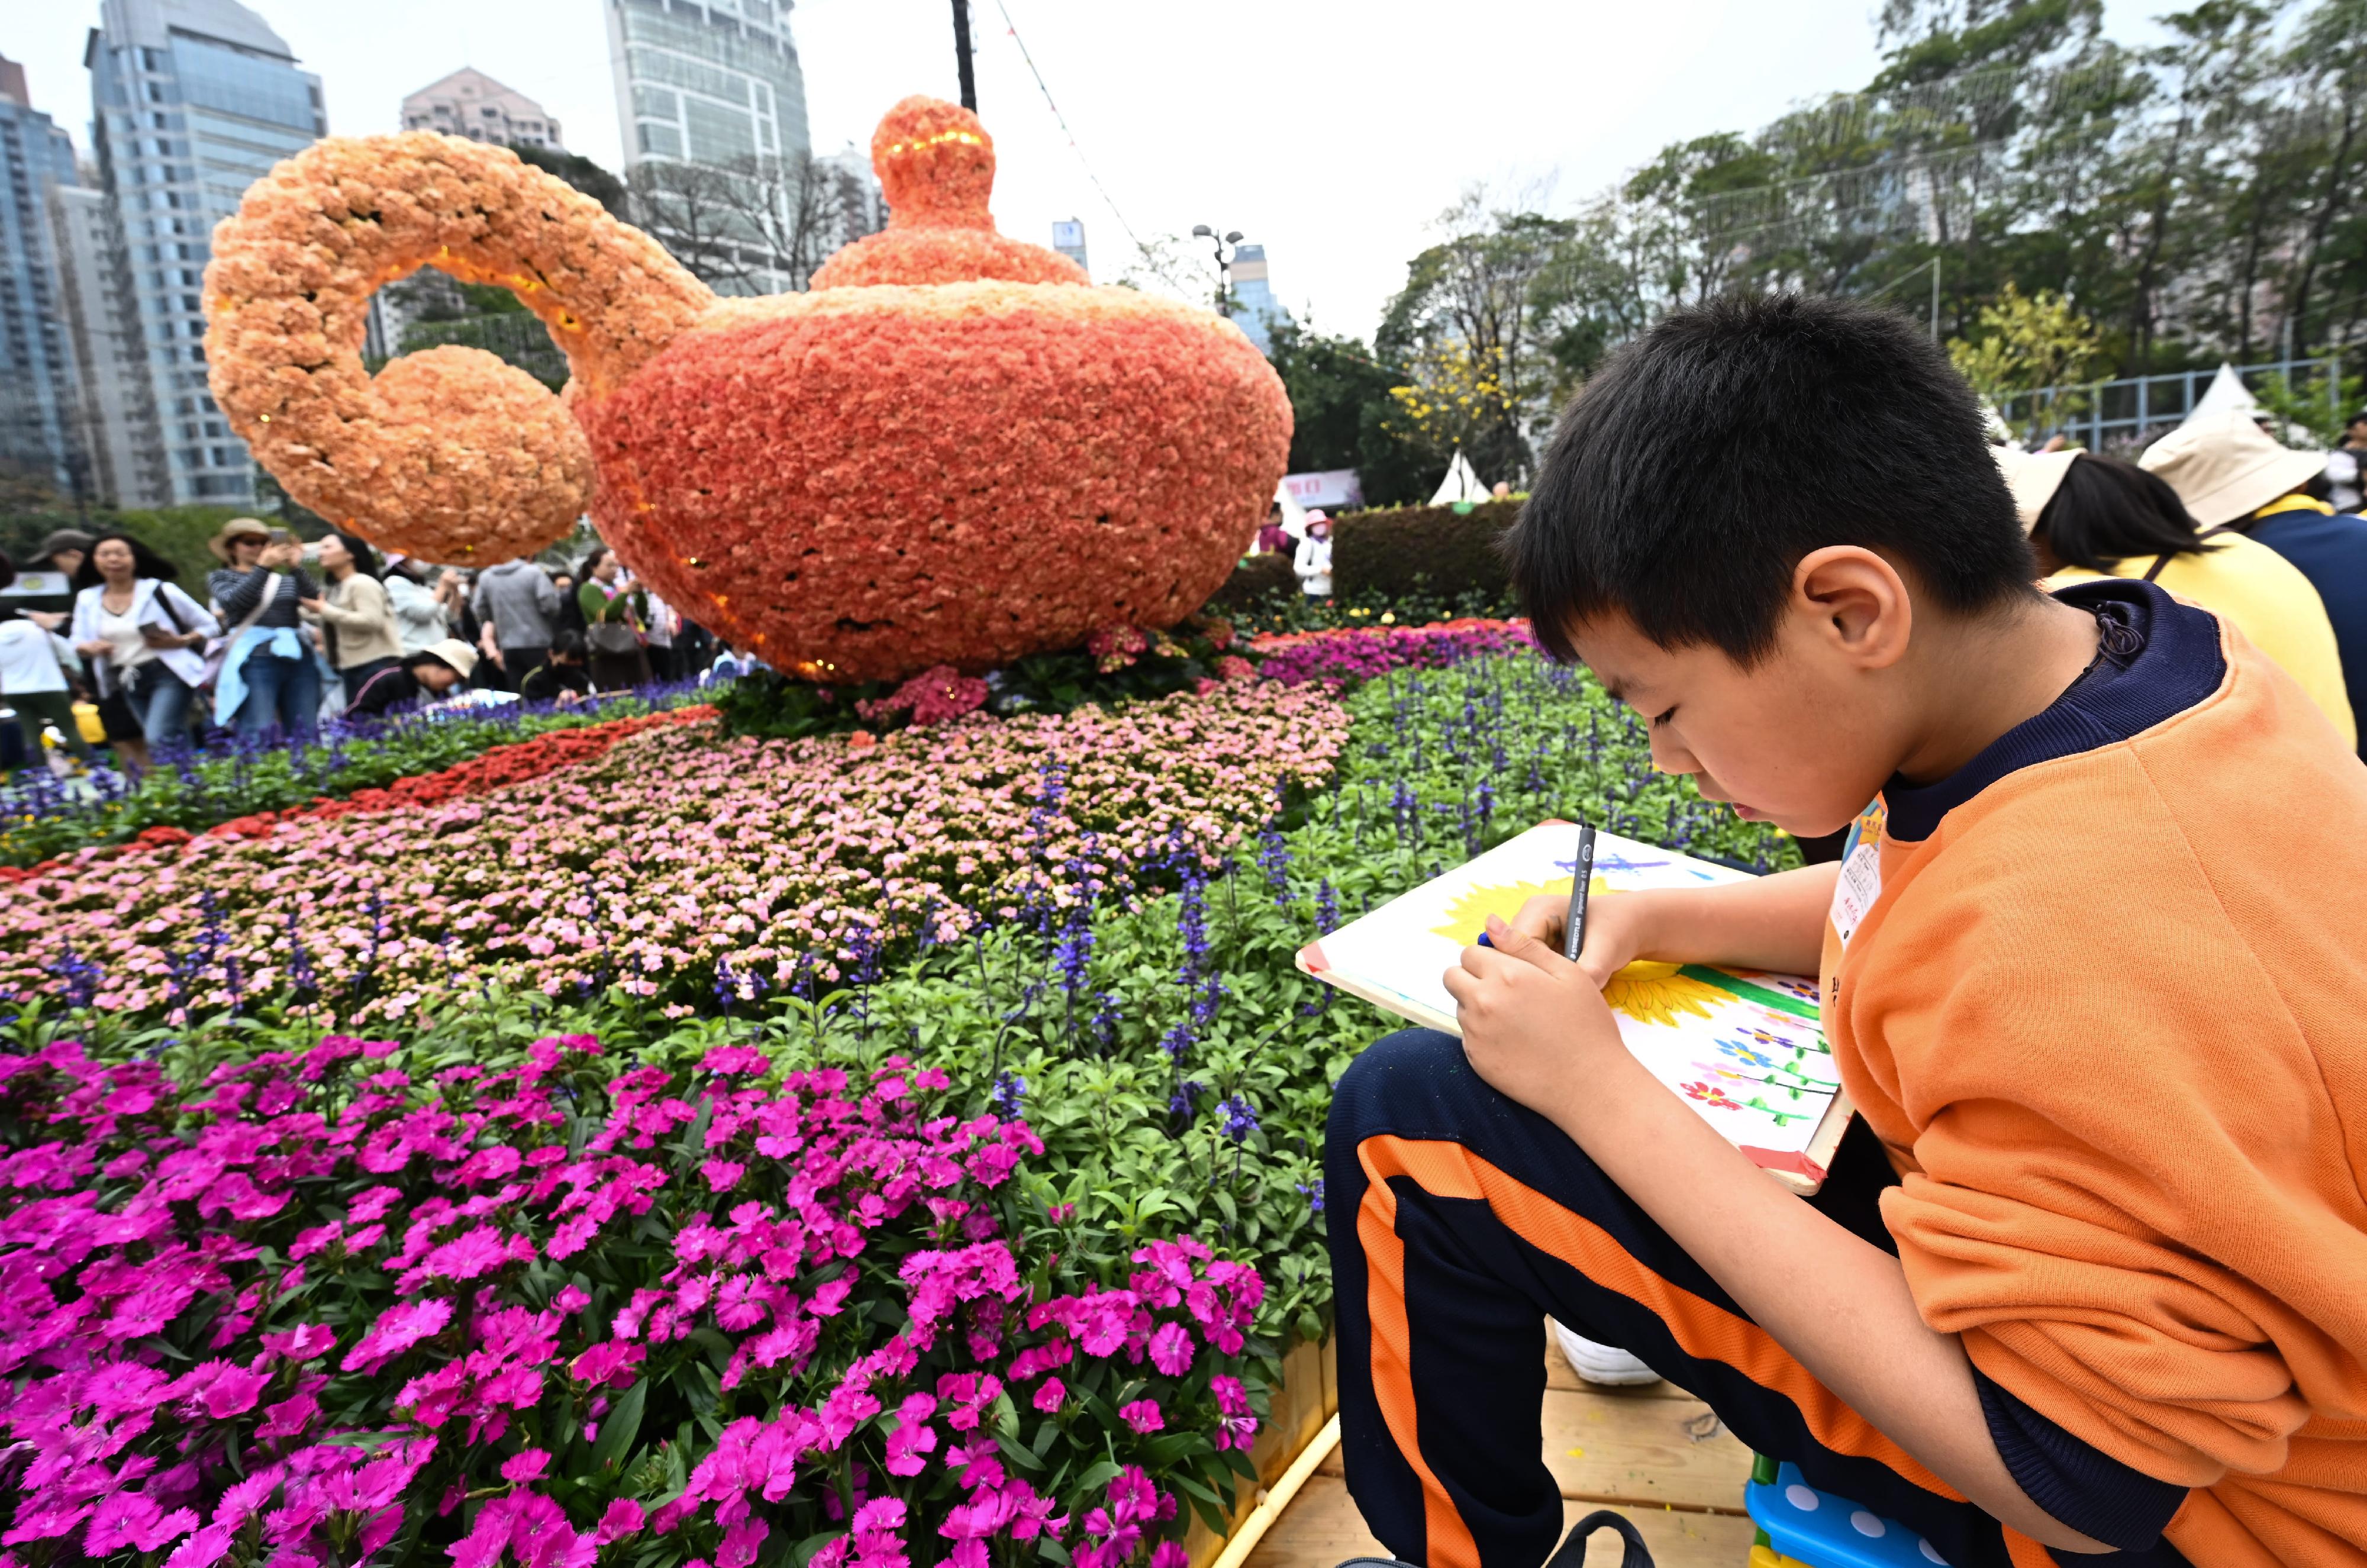 每年一度的賞花盛事香港花卉展覽今日（三月十五日）在維多利亞公園開幕，展出約四十二萬株花卉，包括約四萬株主題花香彩雀。今日舉行的賽馬會學童繪畫比賽吸引約二千二百人參與。